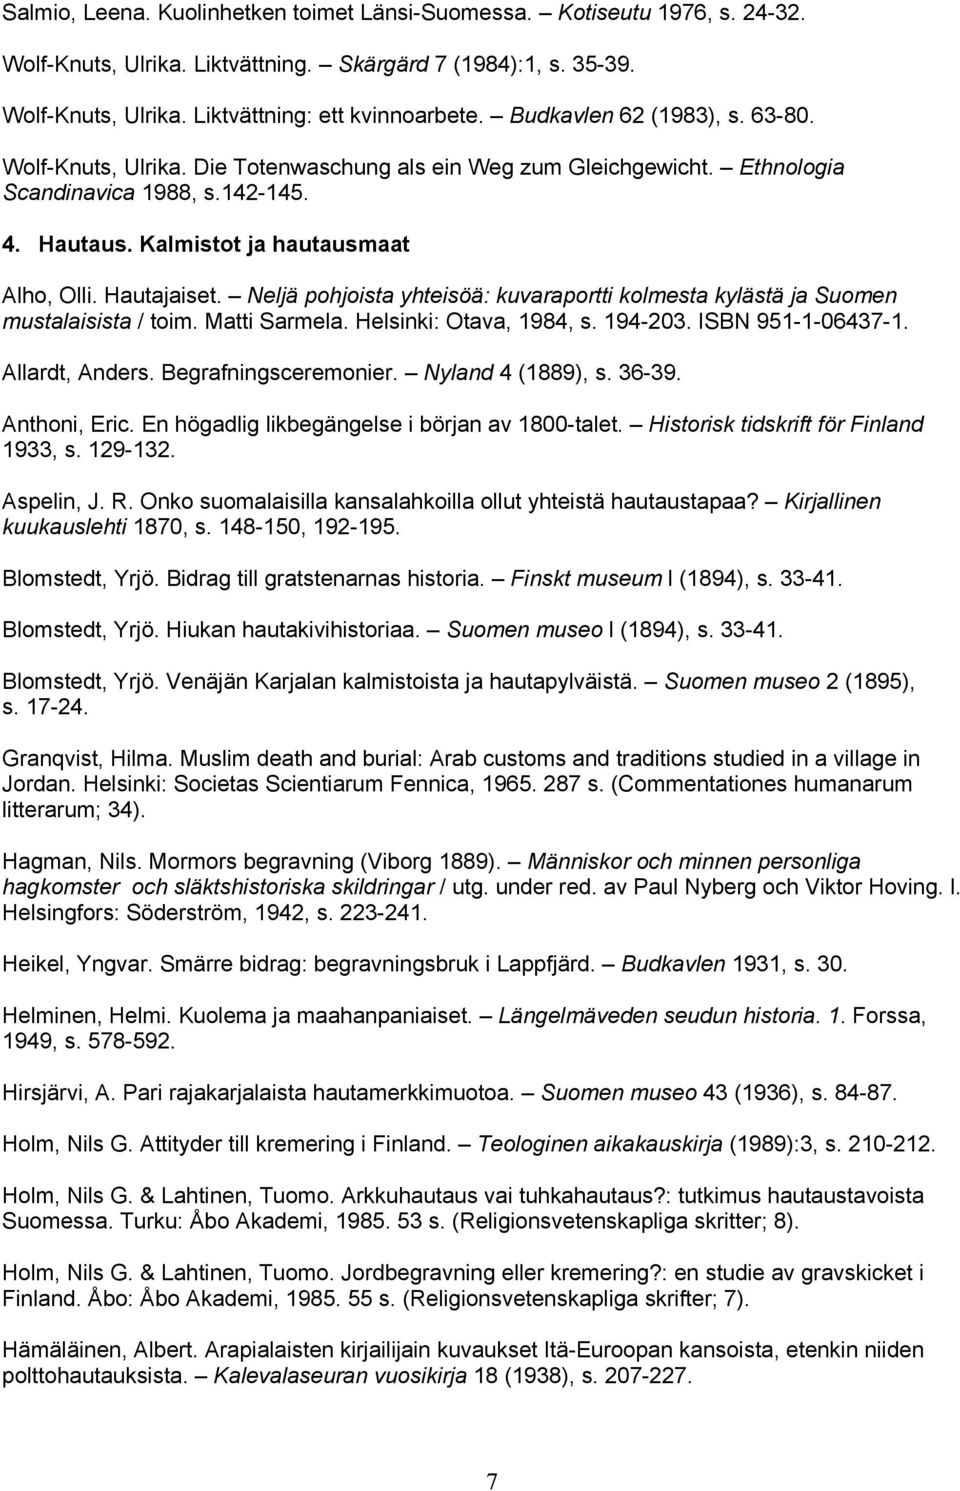 Hautajaiset. Neljä pohjoista yhteisöä: kuvaraportti kolmesta kylästä ja Suomen mustalaisista / toim. Matti Sarmela. Helsinki: Otava, 1984, s. 194-203. ISBN 951-1-06437-1. Allardt, Anders.